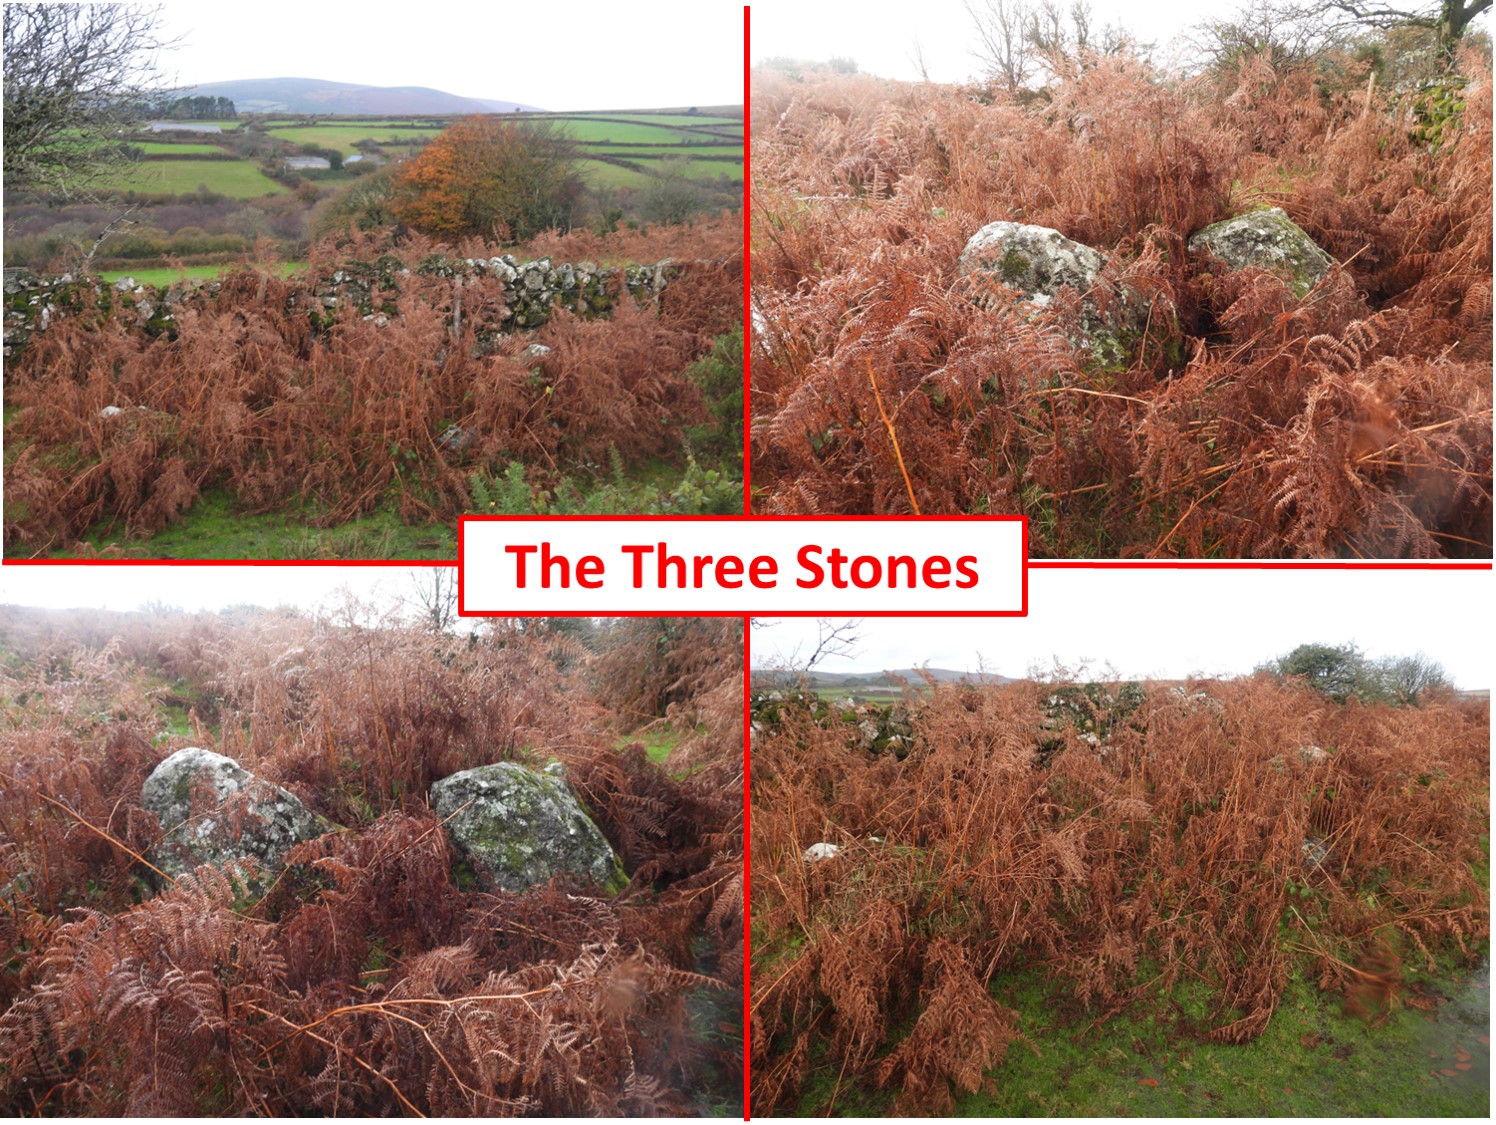 42. The Three Stones